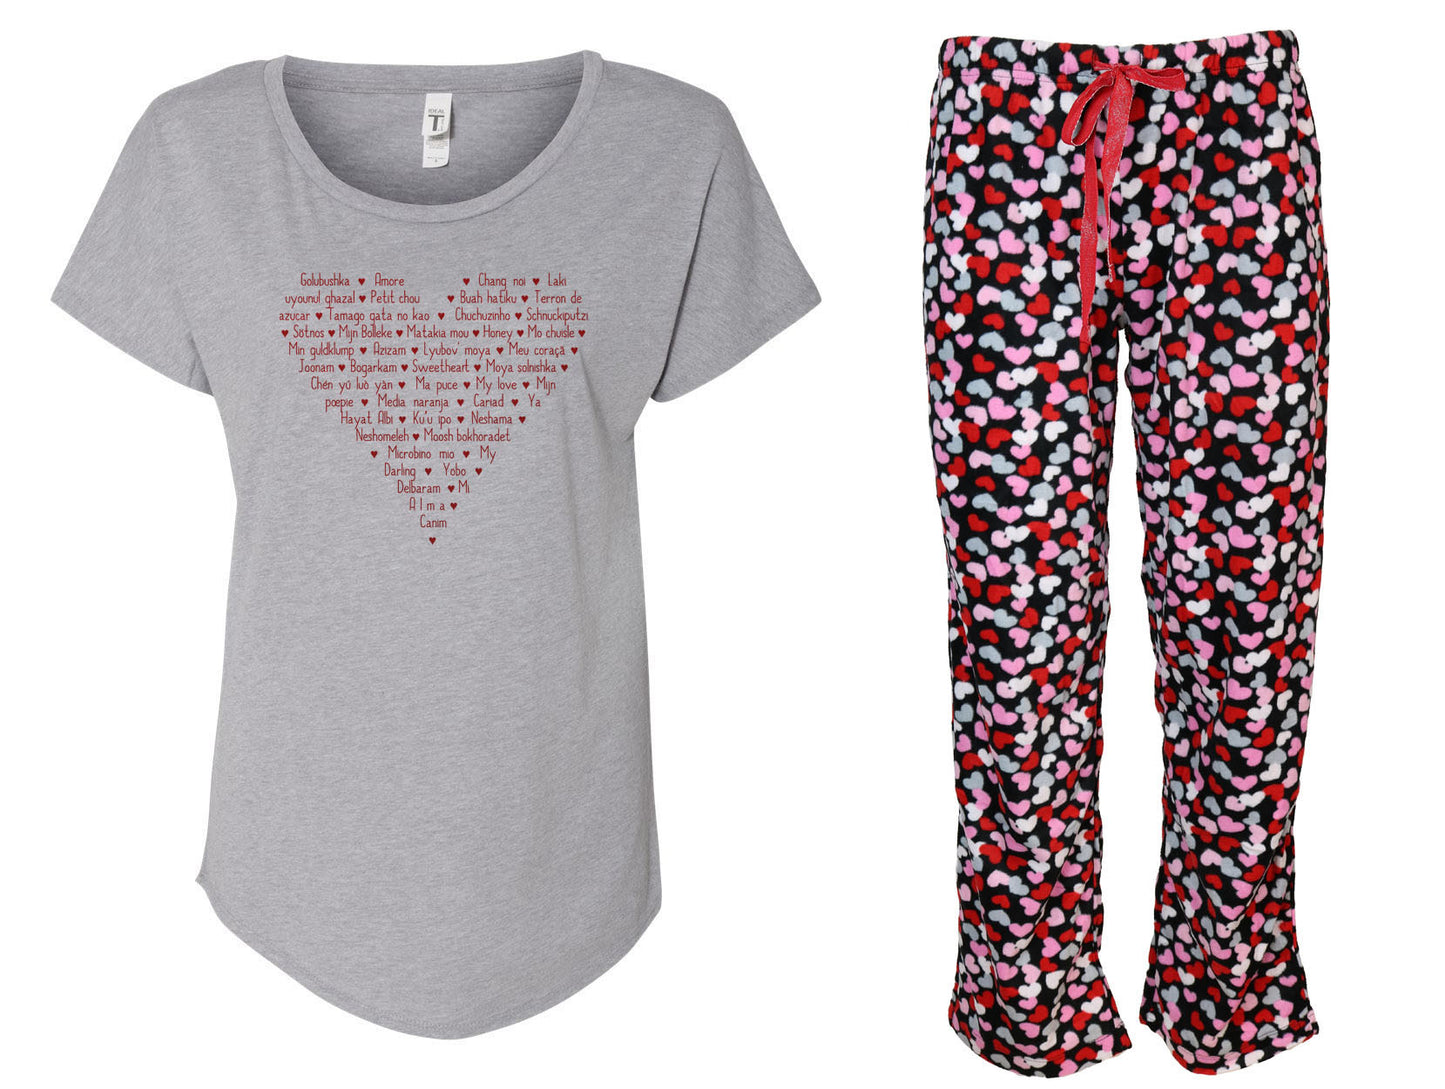 Languages of Love Ladies Shirt & Pant Pajama Set